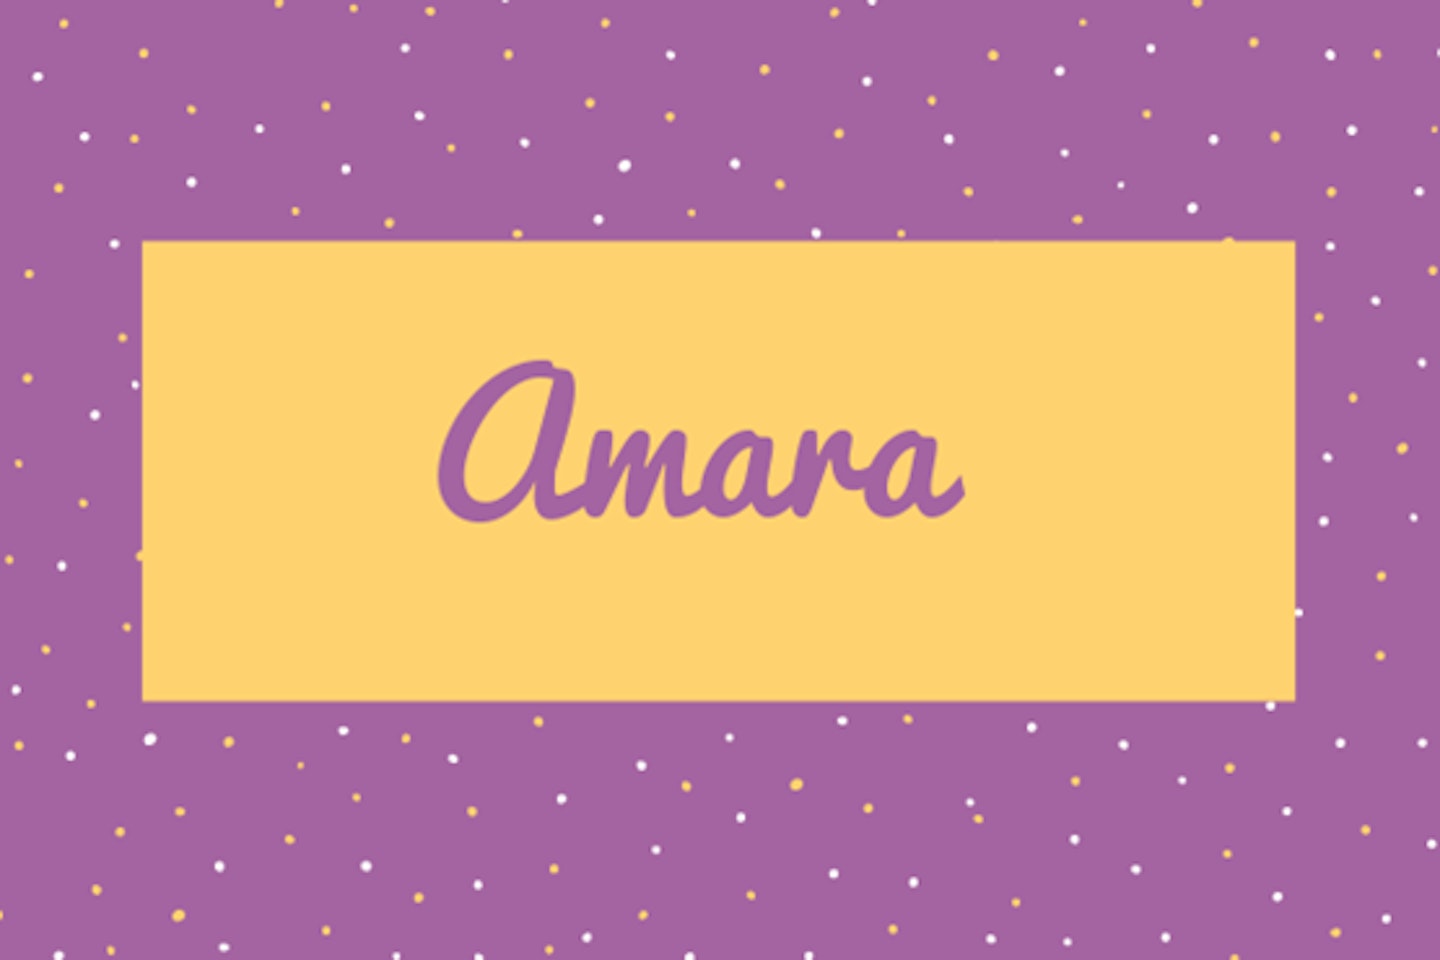 13) Amara